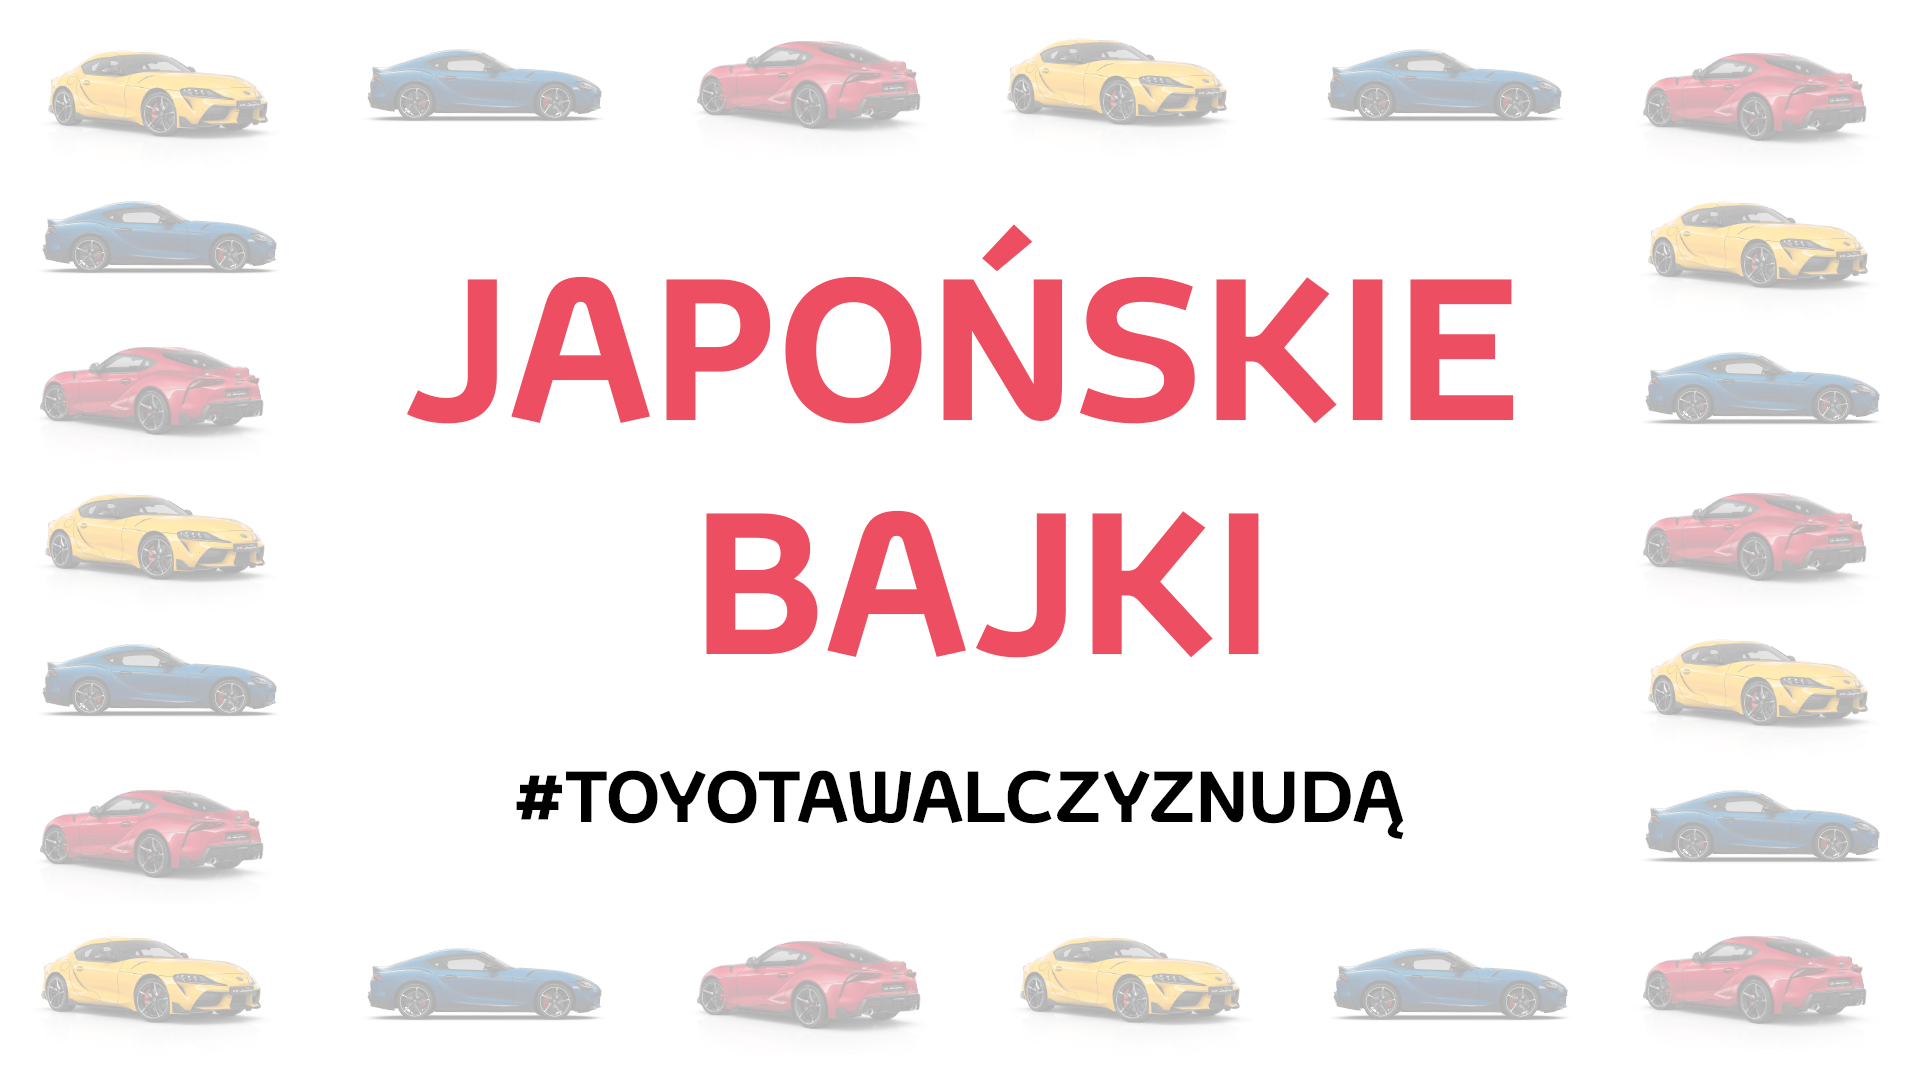 Japońskie bajki sposobem Toyoty na walkę z nudą